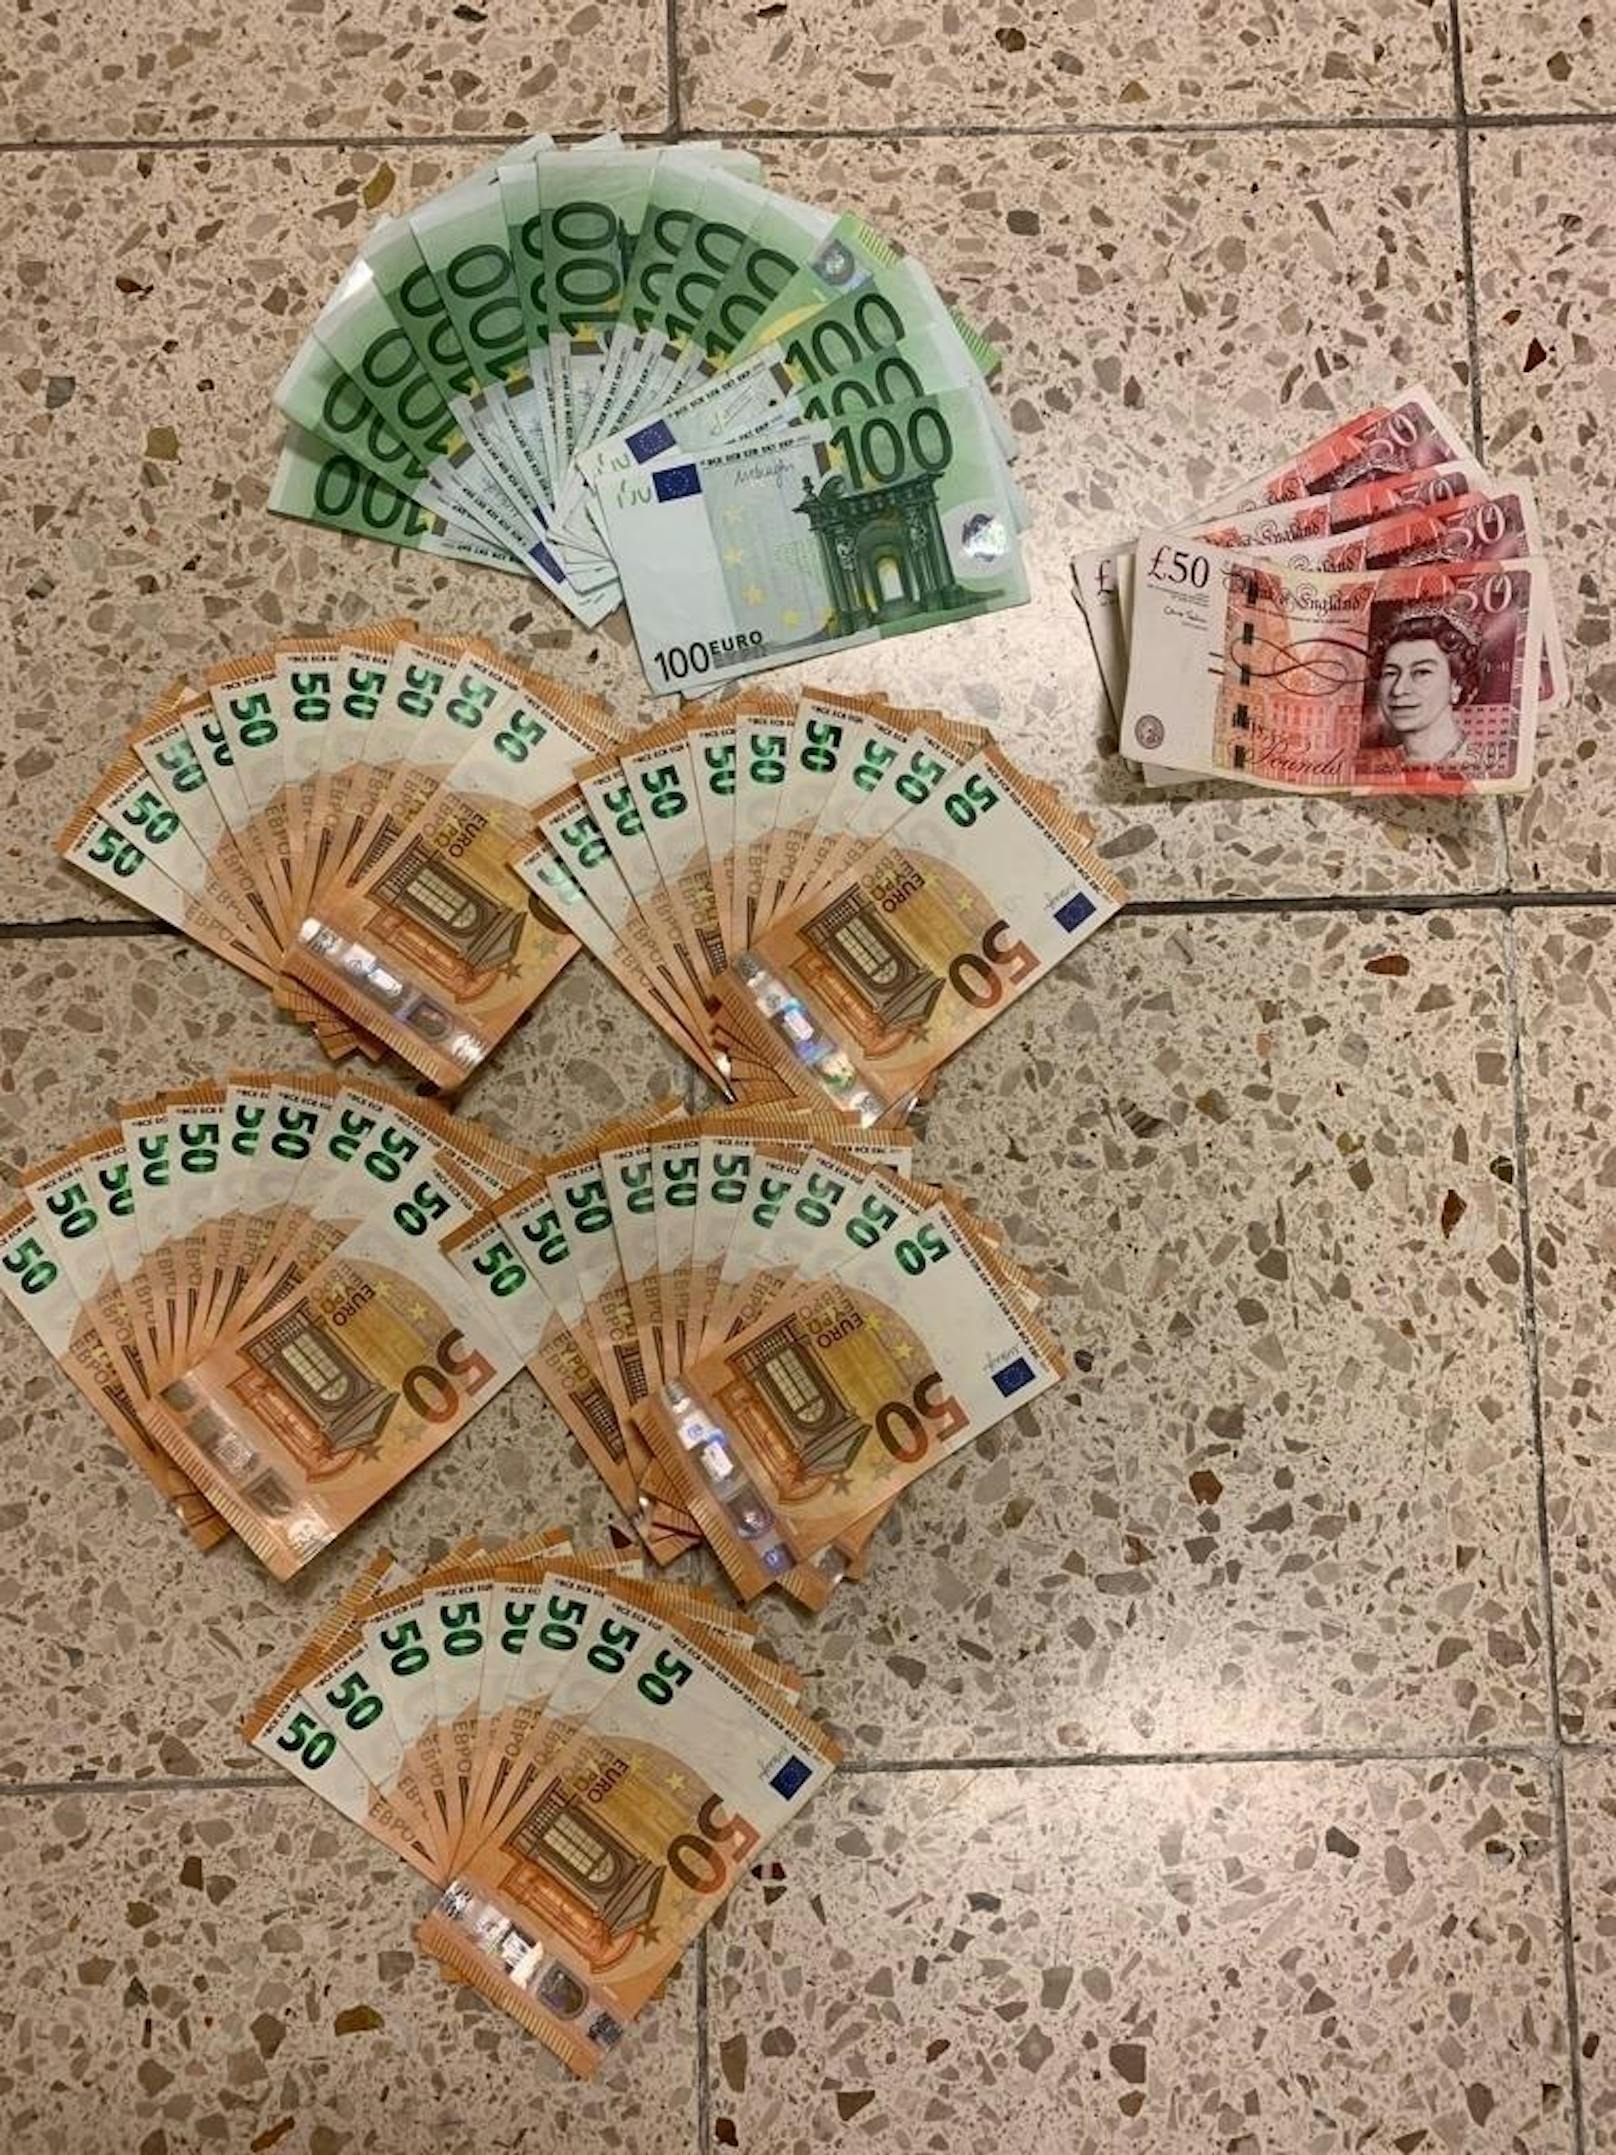 Bei einer Schwerpunktaktion "Suchtmittelkriminalität" der Polizei wurden zwei mutmaßliche Schmuggler festgenommen. In ihren Autos wurden mehrere tausend Euros gefunden und sichergestellt.